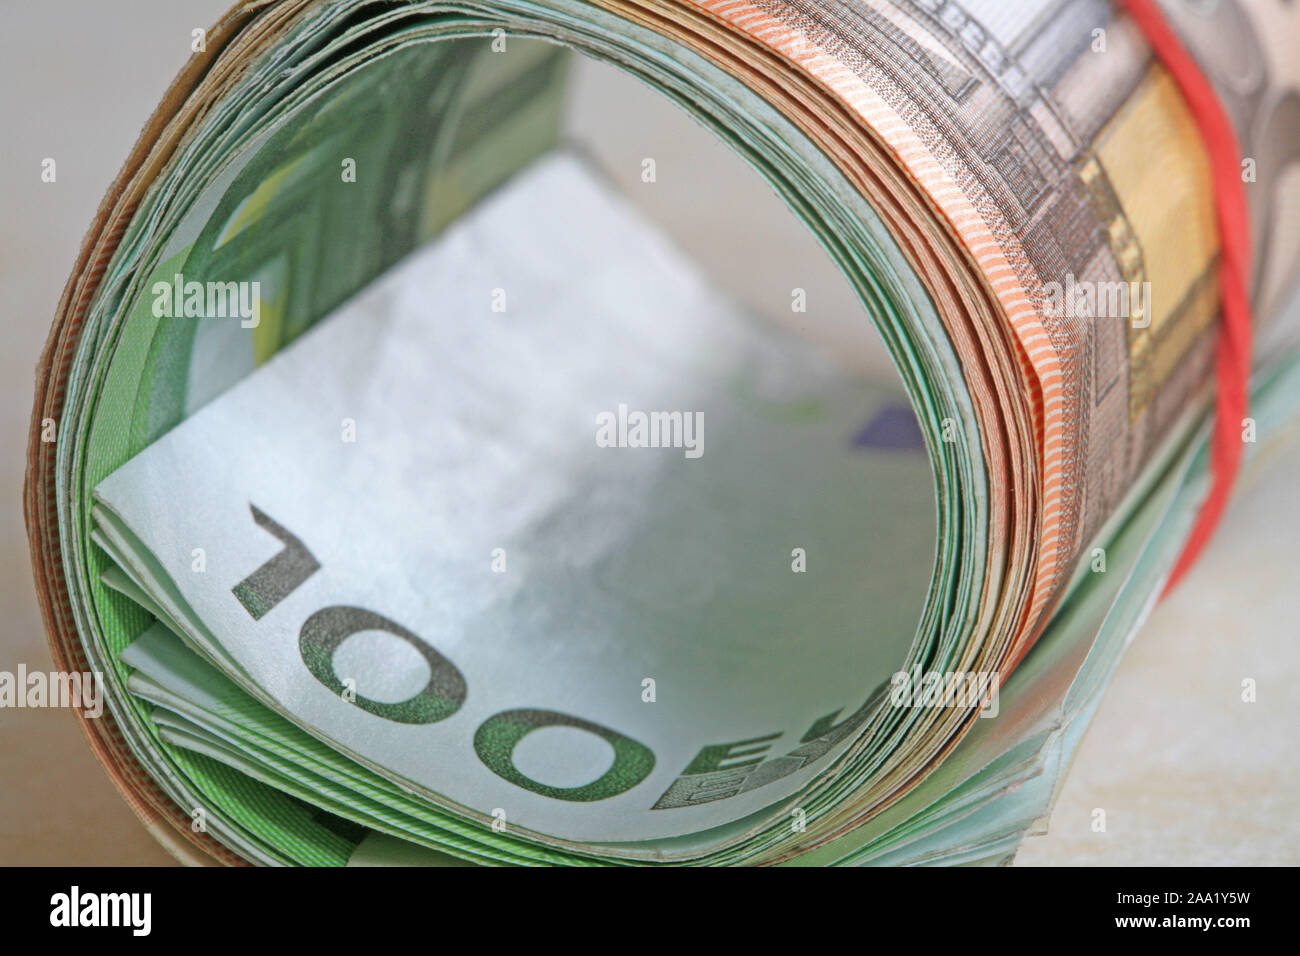 Euro mit einem Geldscheine Zusammengerollte Gummiring laminados / billetes con un anillo de goma Foto de stock